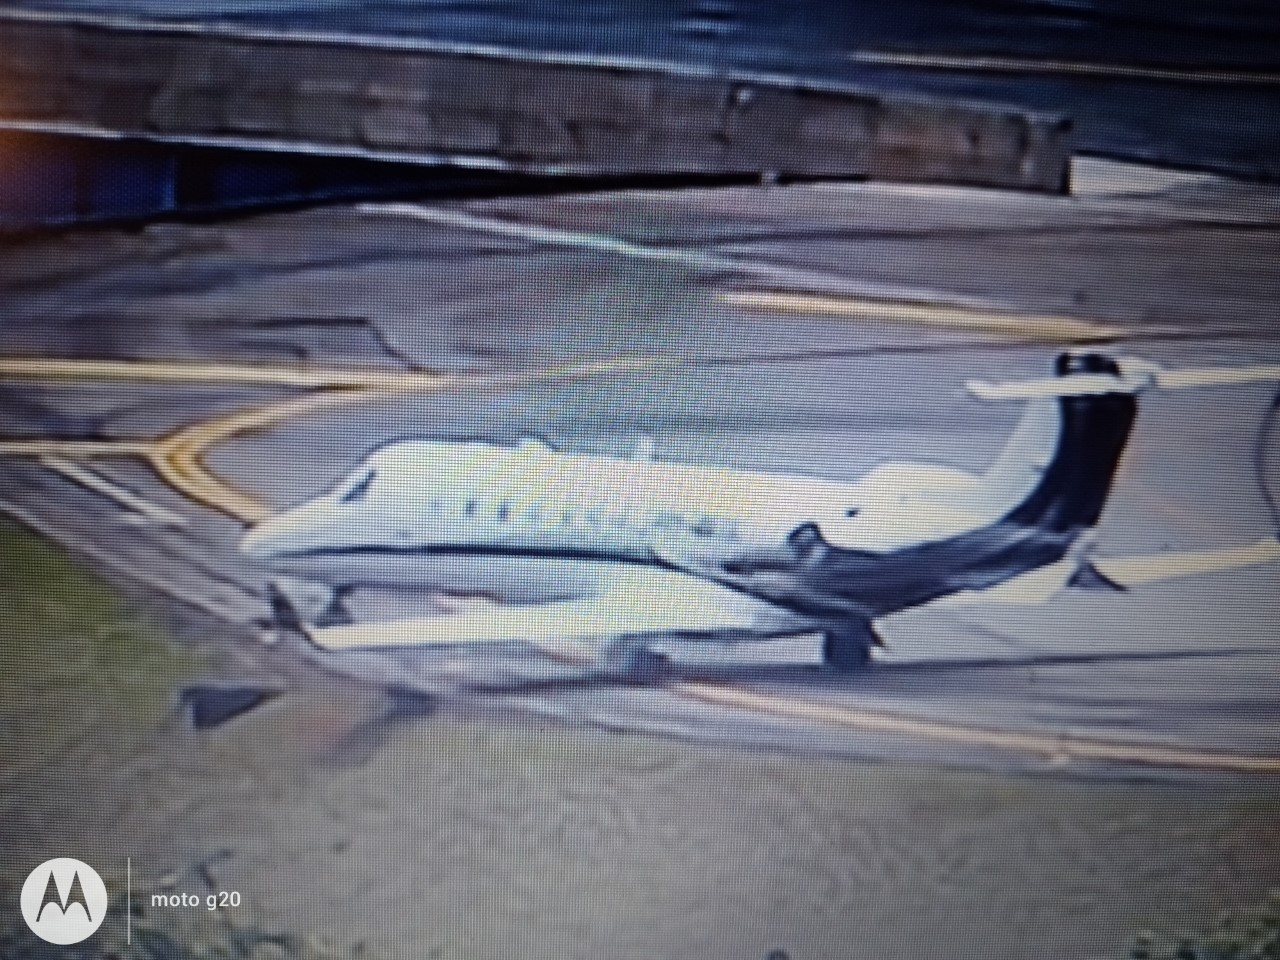 Pneus estouram durante puiso de avião em Congonhas, SP, e pista fica interditada — Foto: Reprodução TV 